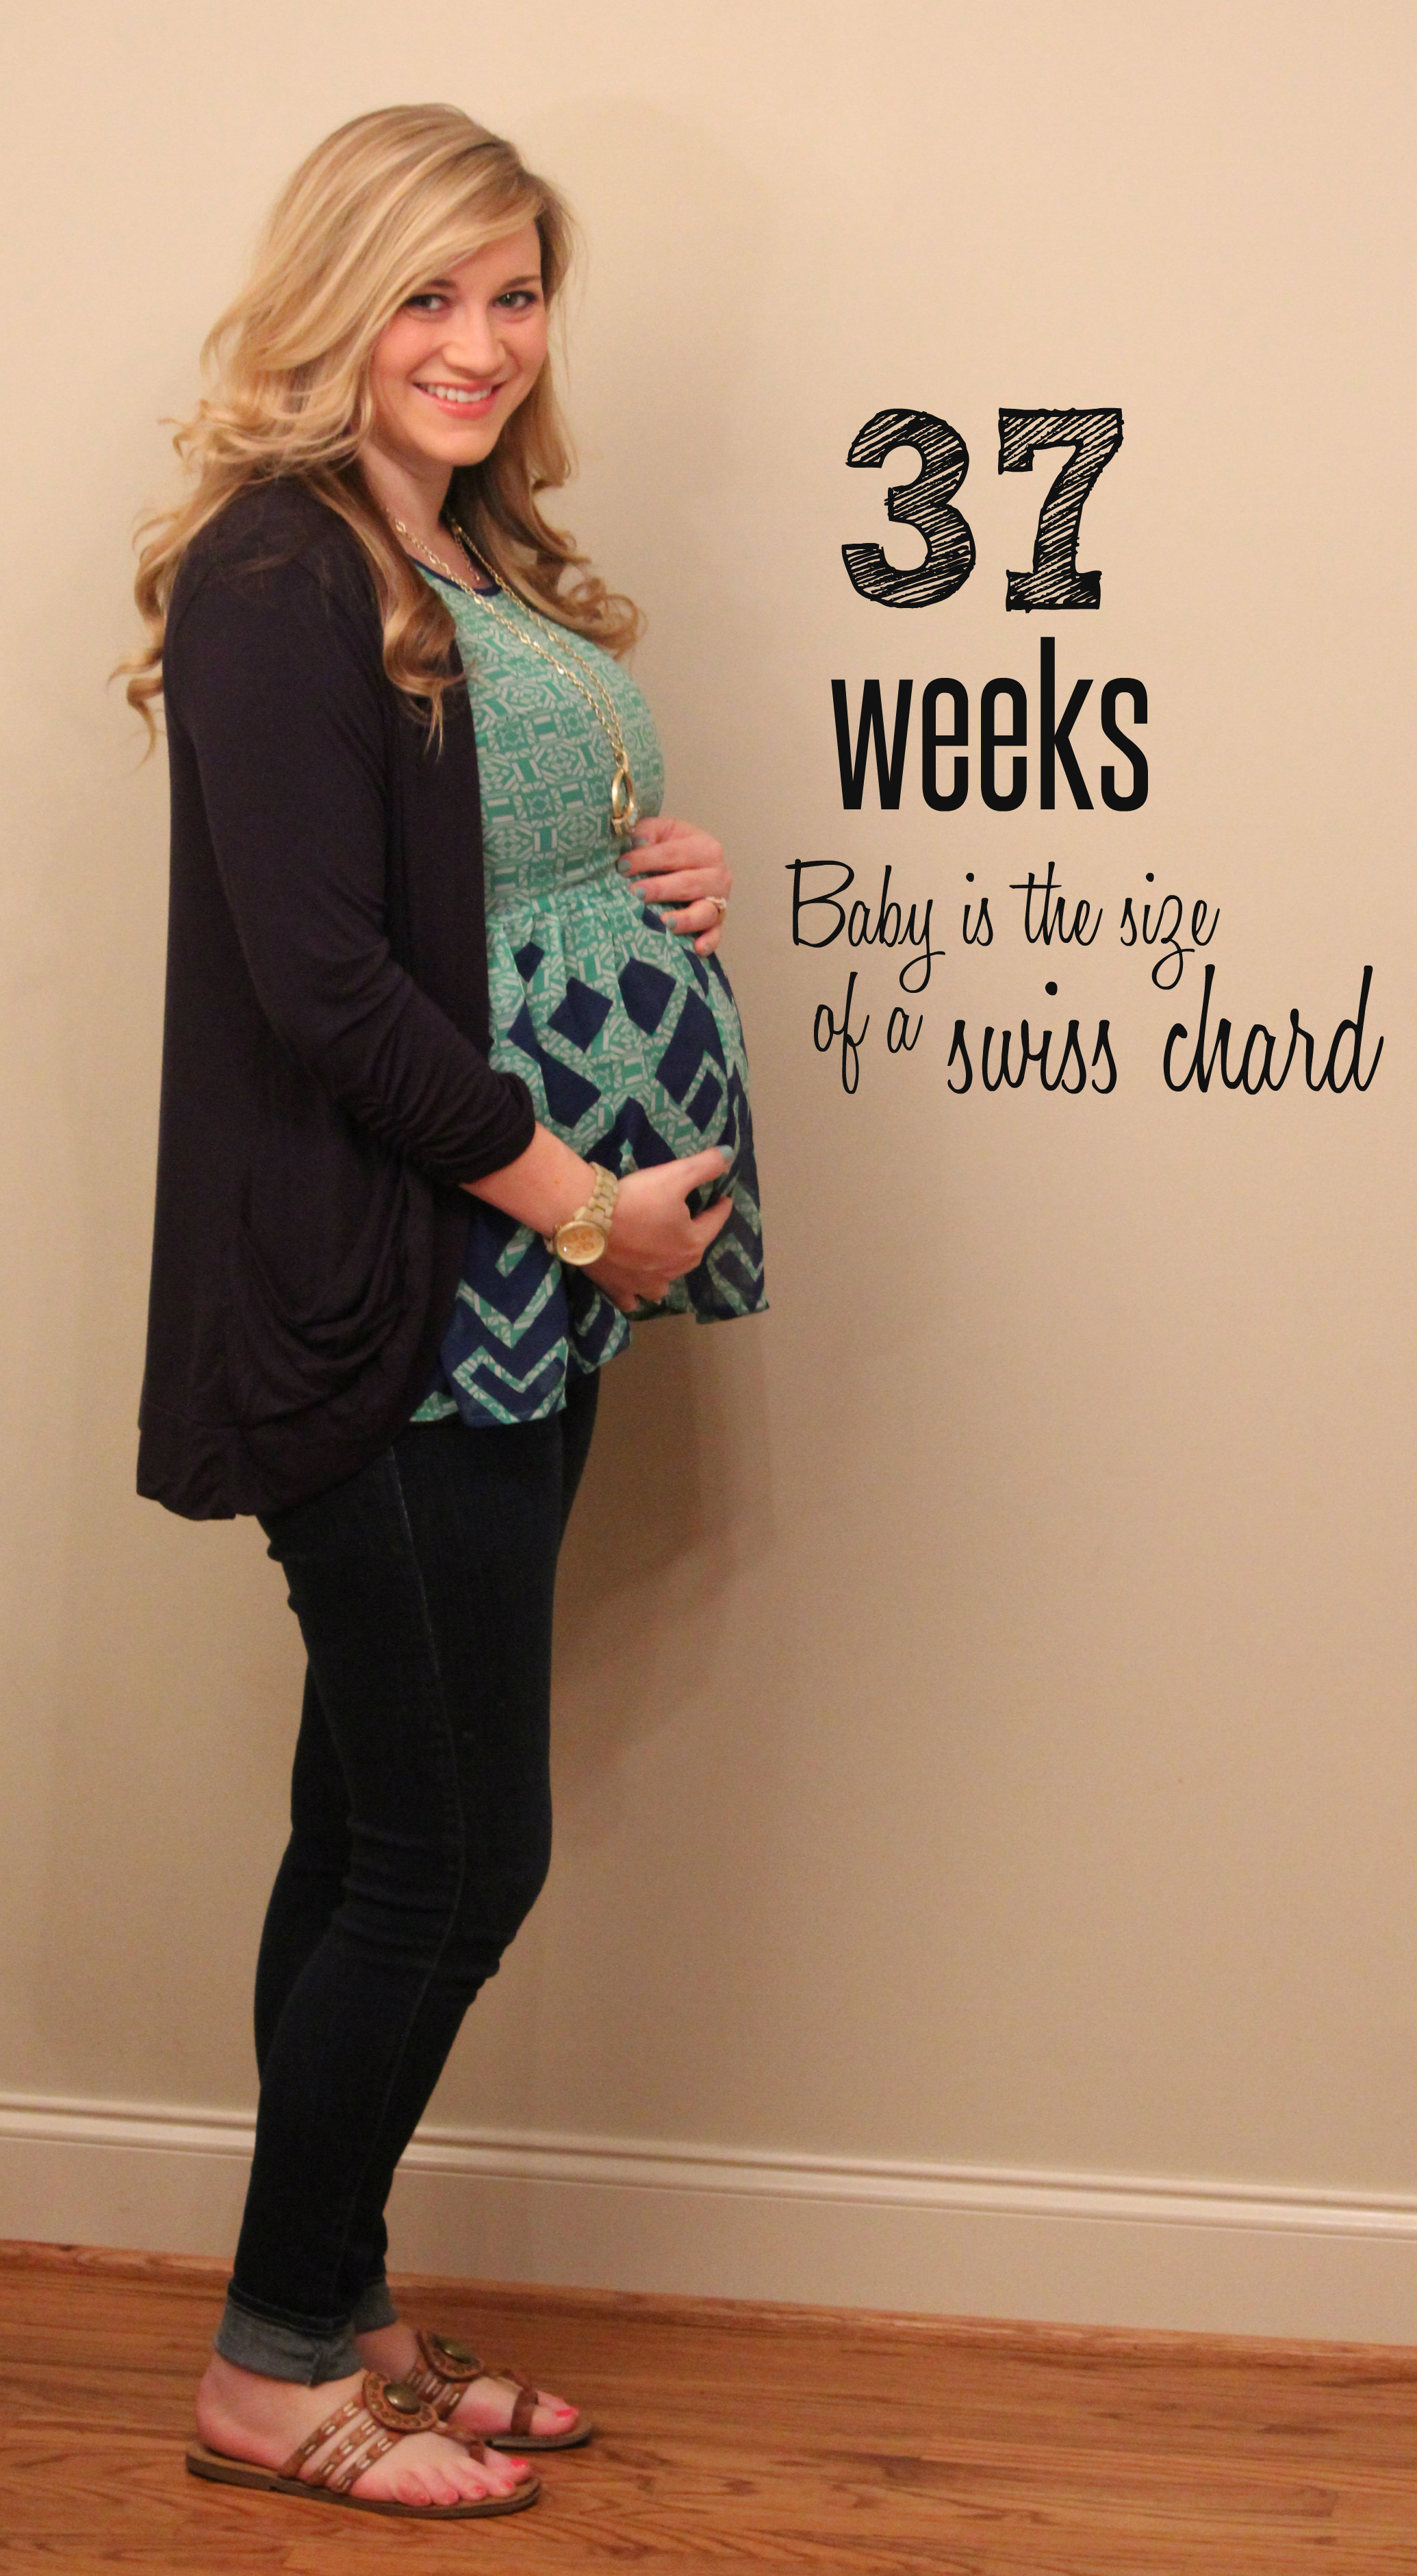 37 weeks